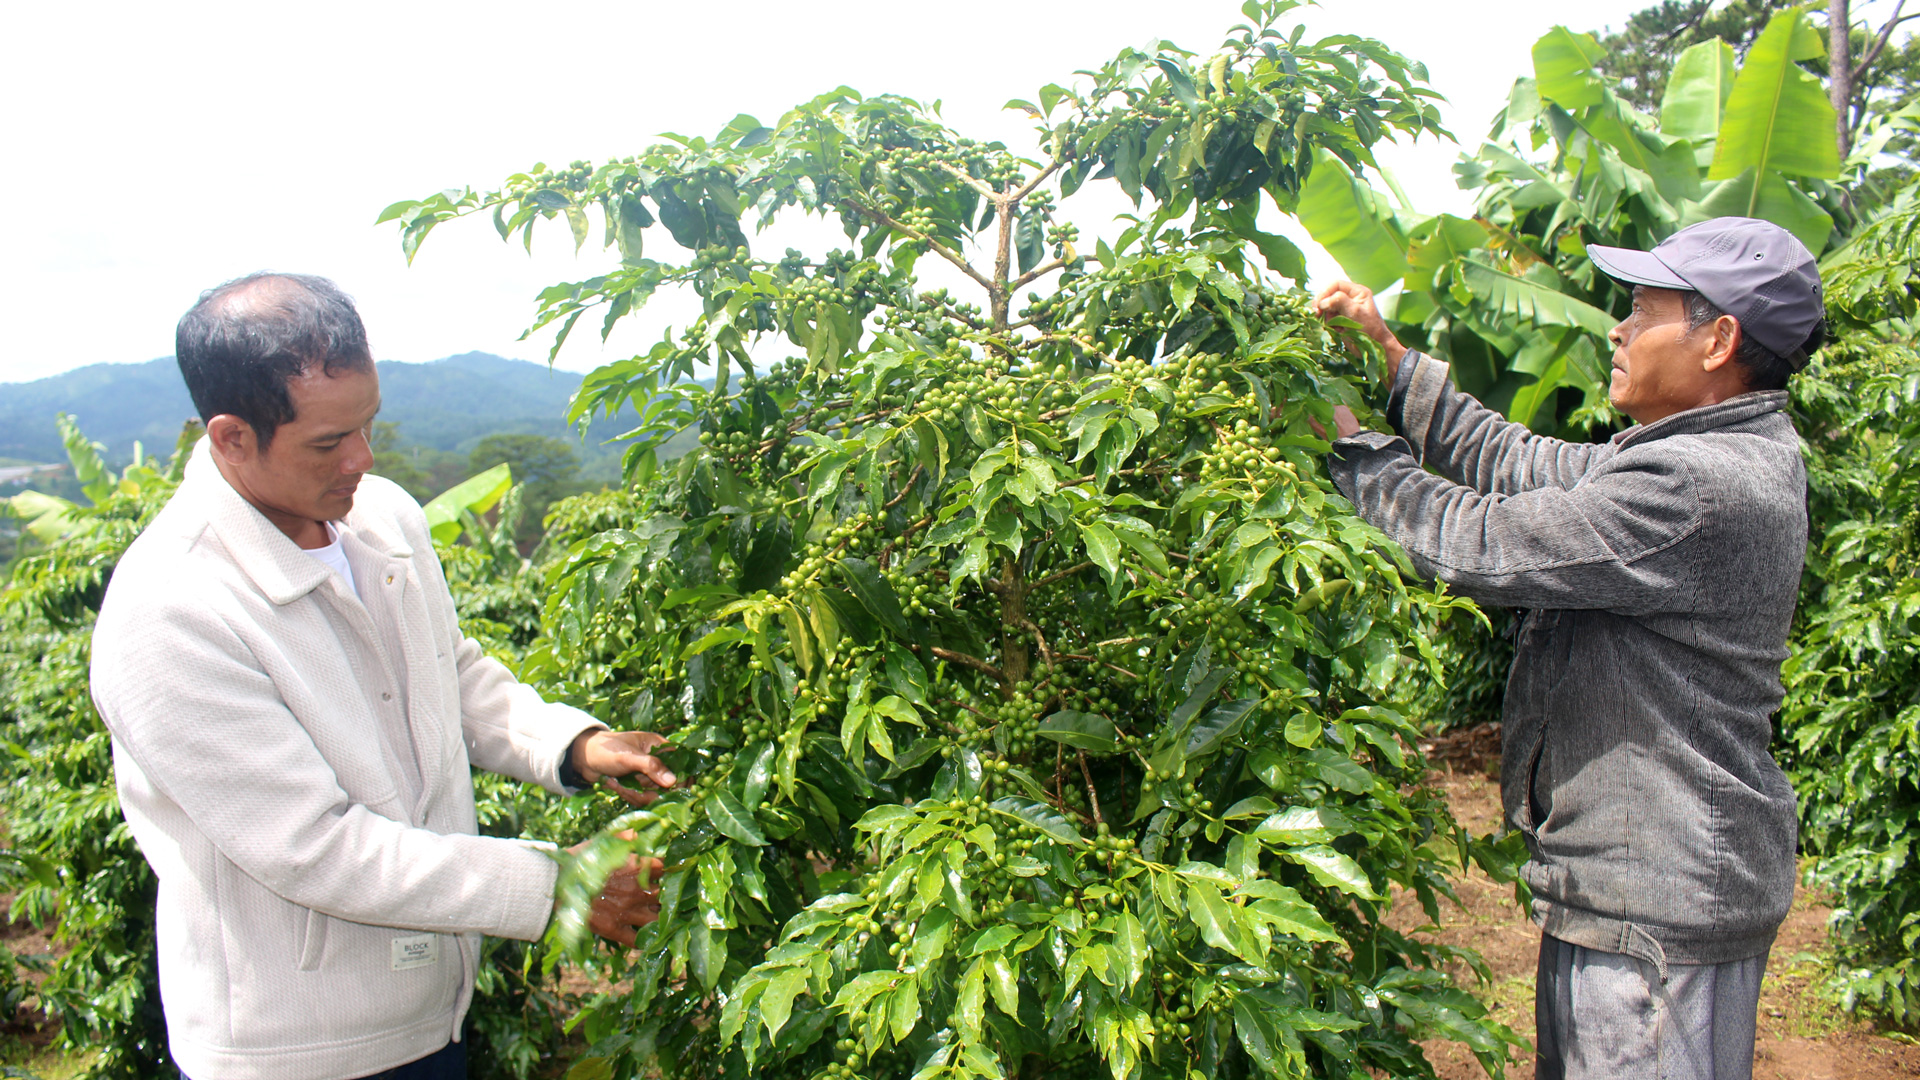 Việc áp dụng quy trình kỹ thuật tiên tiến trồng, chăm sóc cà phê 
đã cho bà con những vườn cây trĩu hạt